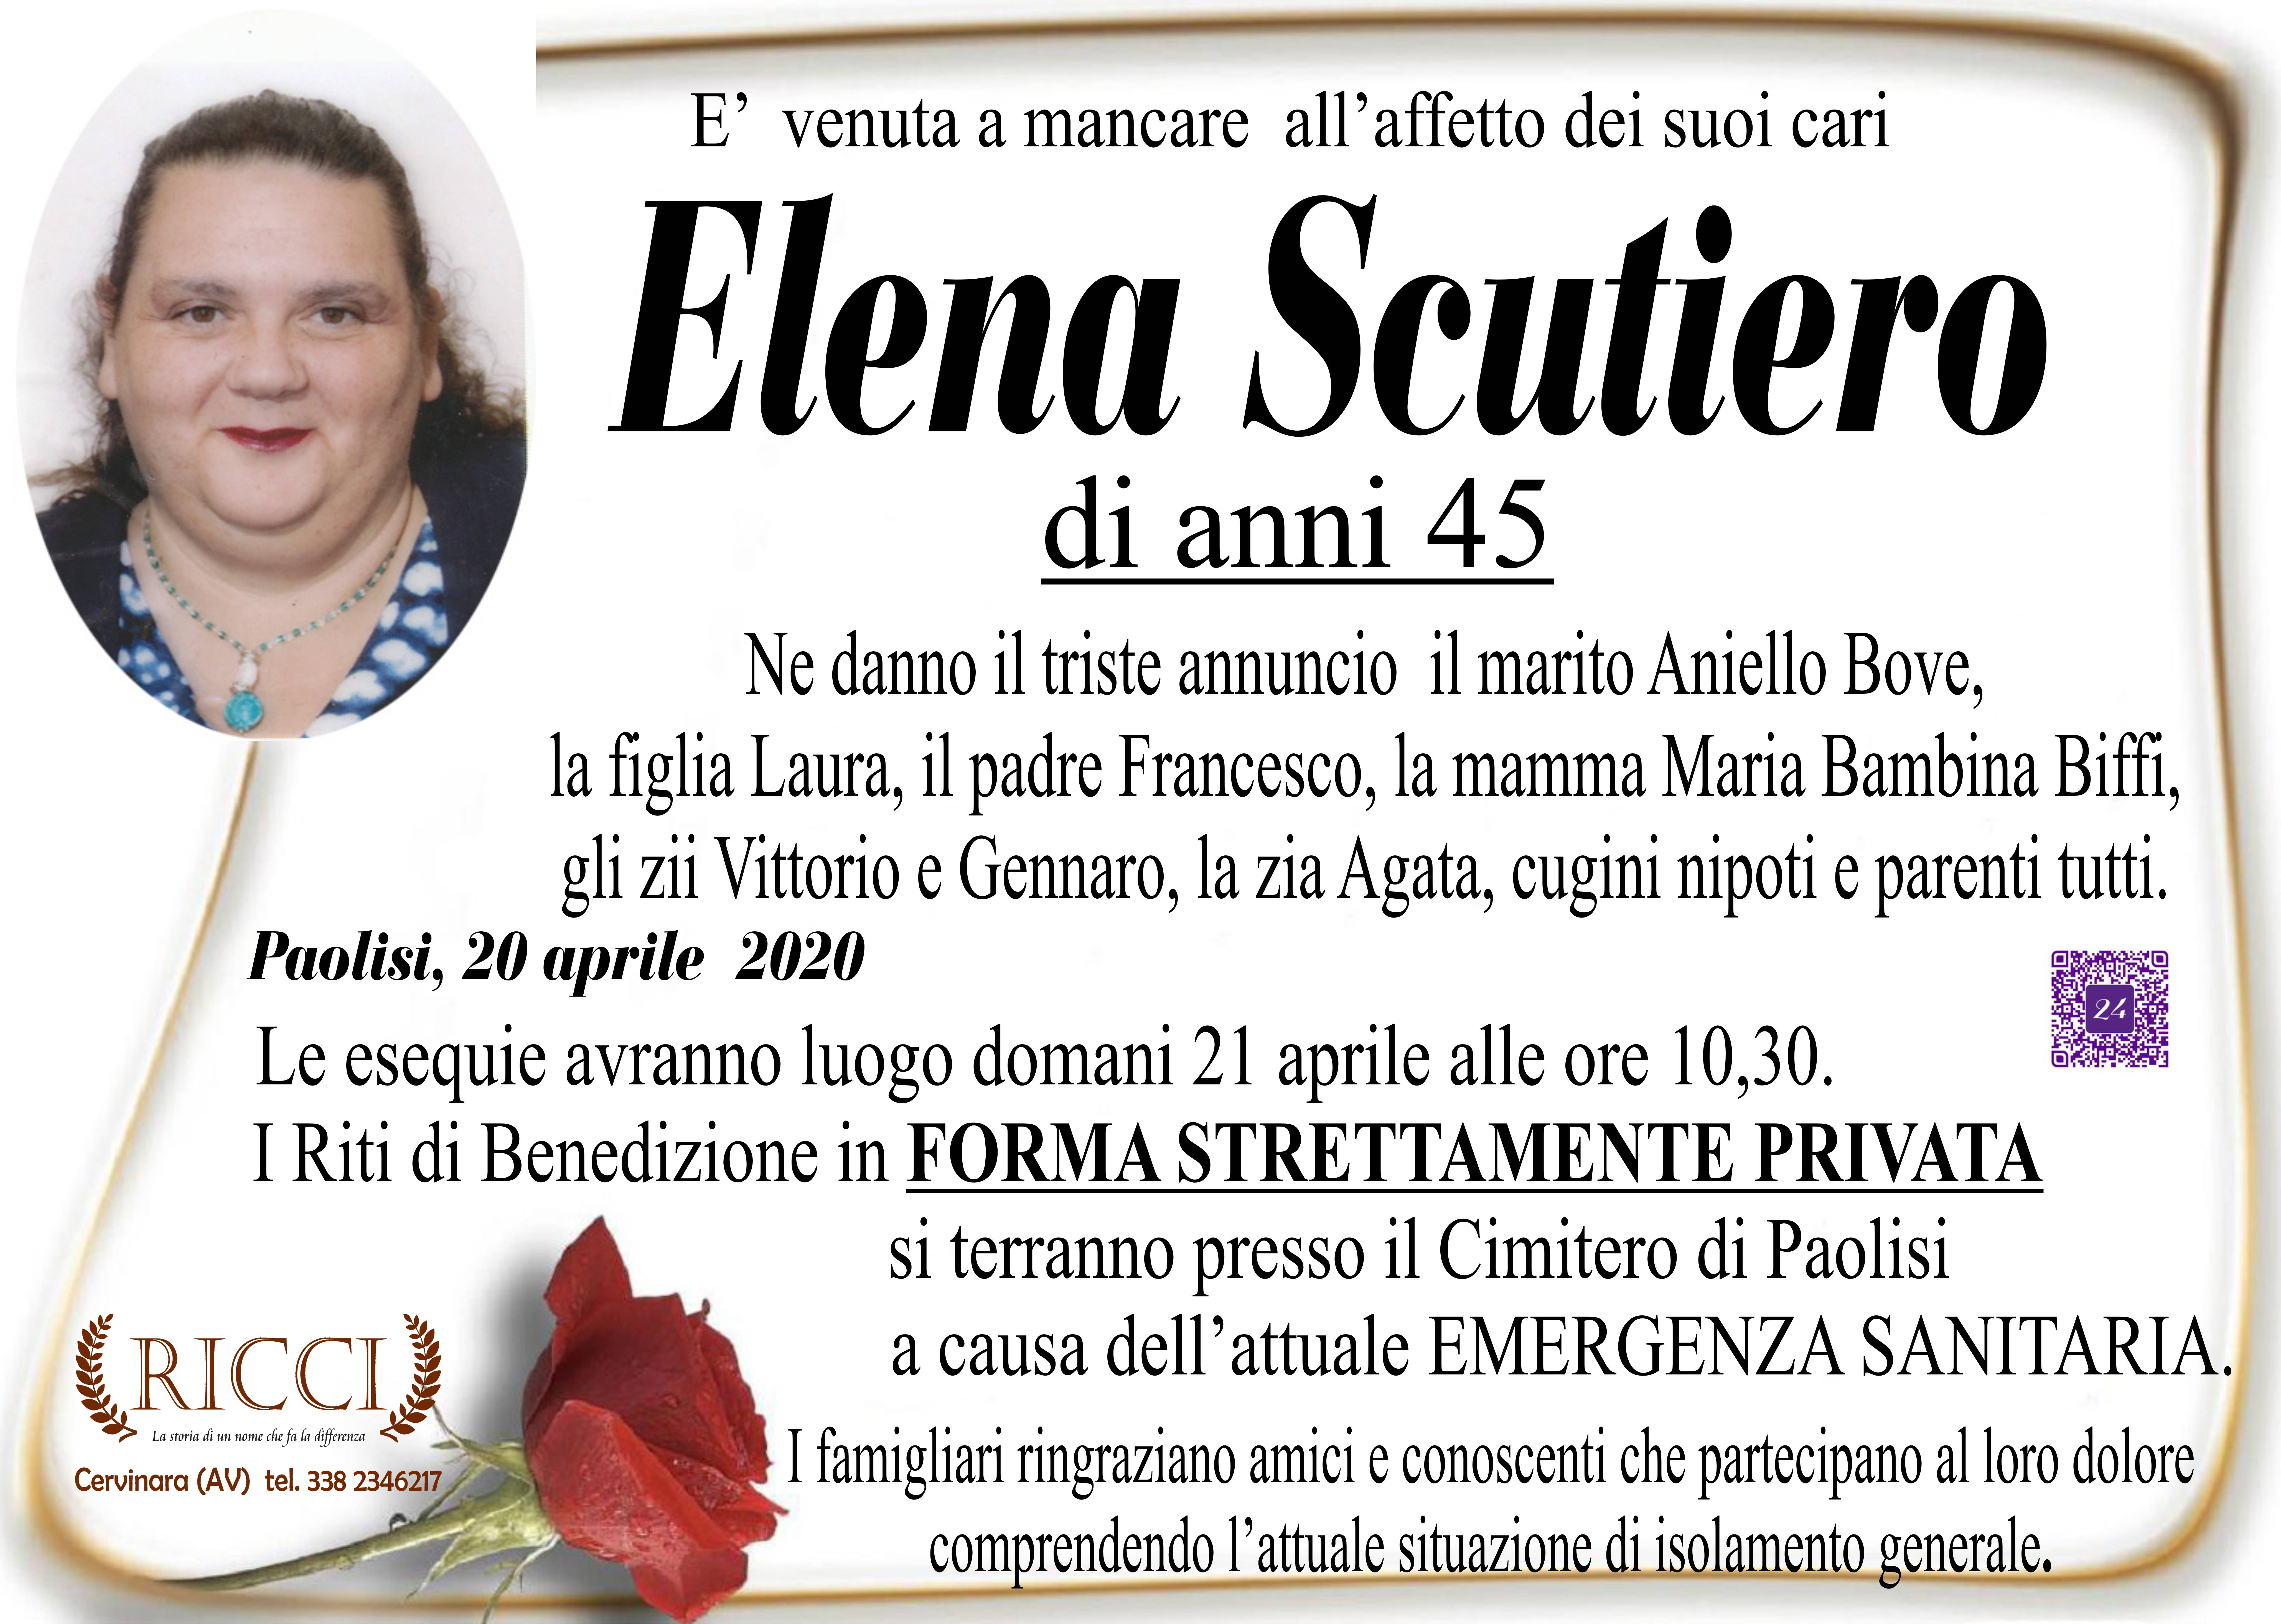 Elena Scutiero